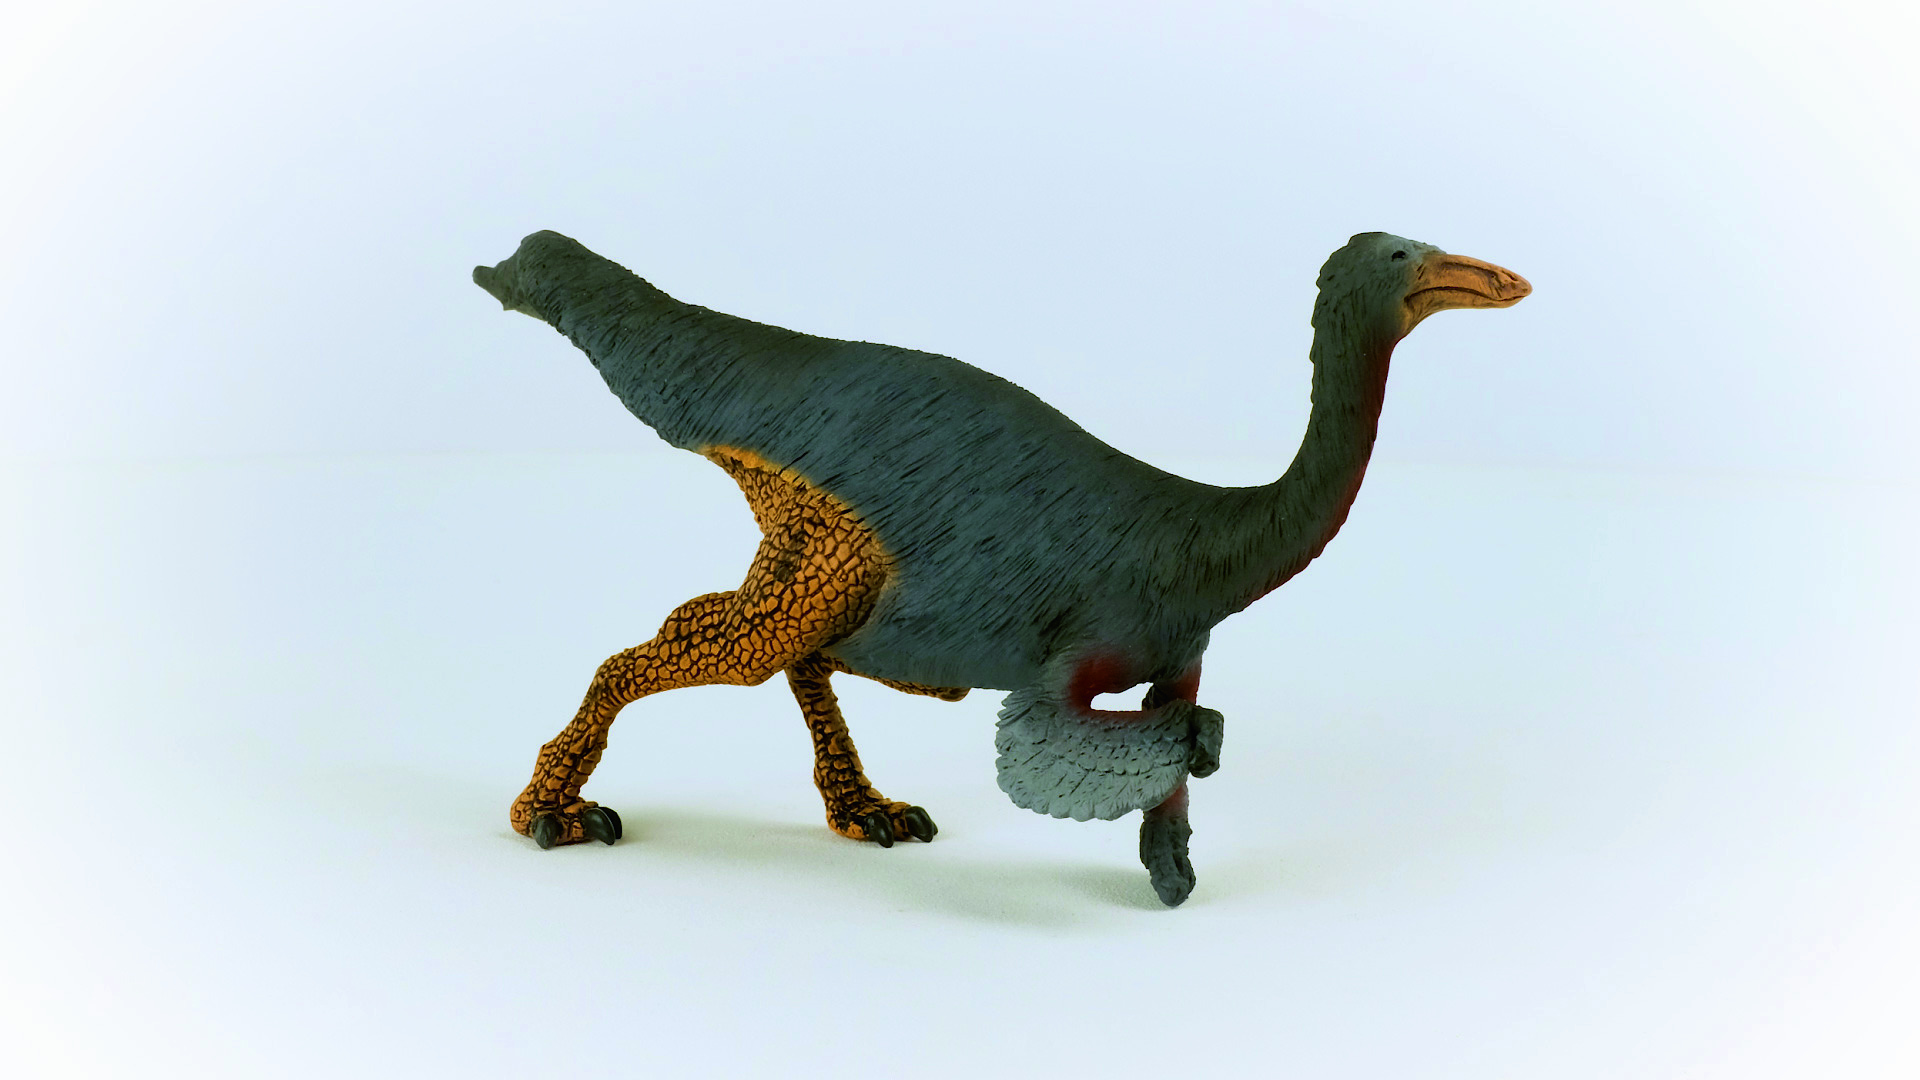 SCHLEICH Dinosaurs 15038 Gallimimus Spielfigur Mehrfarbig